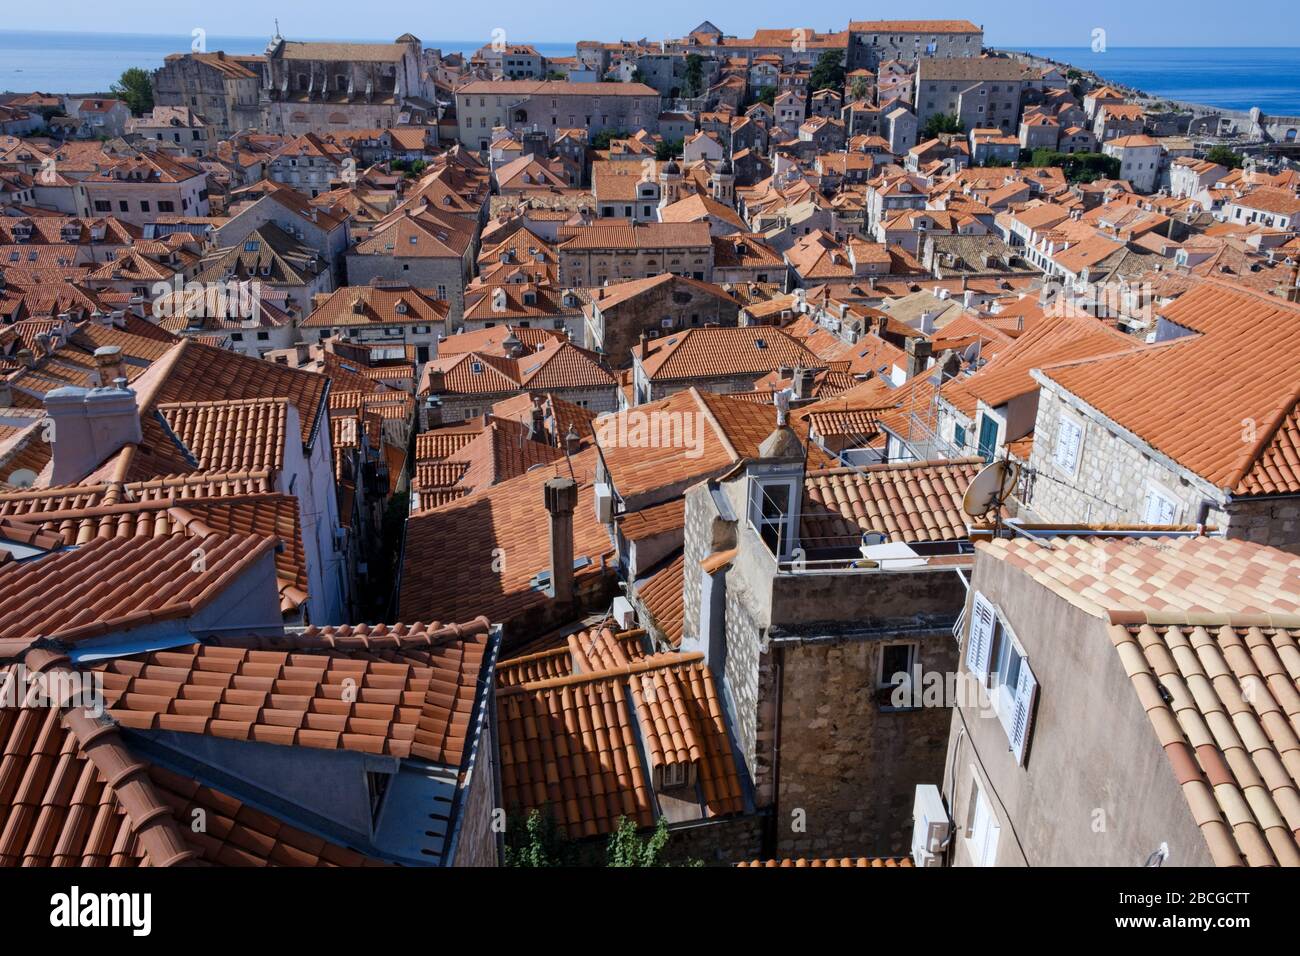 Vista sulla città vecchia di Dubrovnik. Mostra le case densamente impaccate e gli edifici e i loro caratteristici tetti di tegole rosse Foto Stock